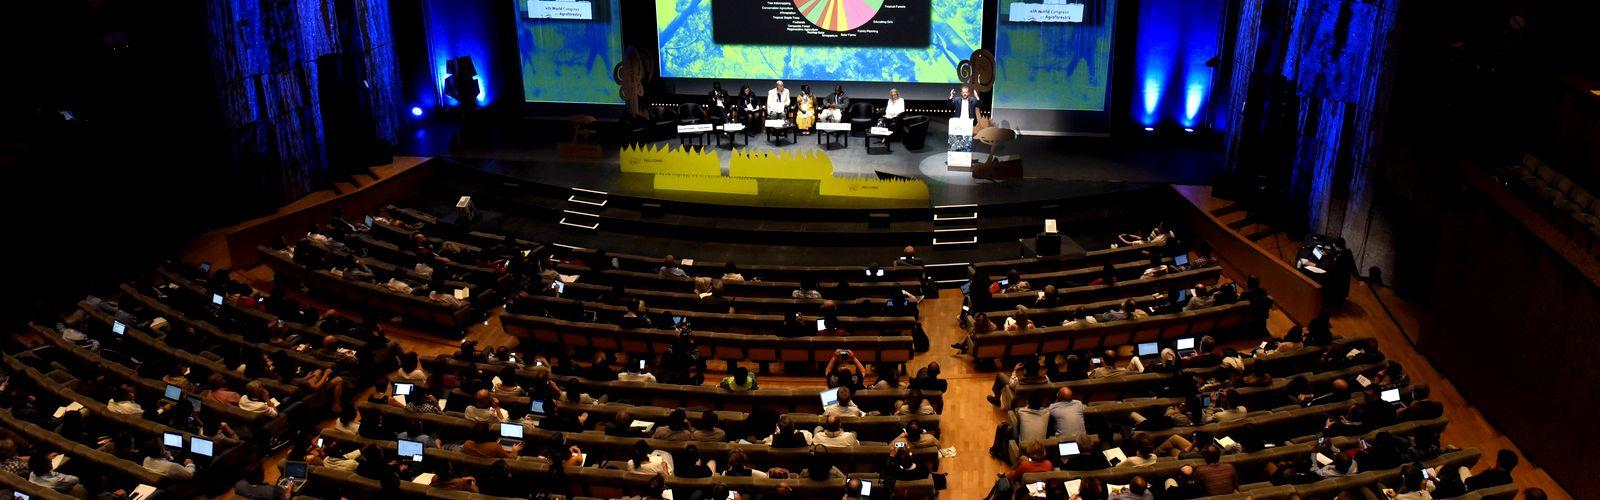 Le 4e congrès mondial d'agroforesterie s'est tenu à Montpellier en 2019 © Agroforestry 2019, P. Soulier